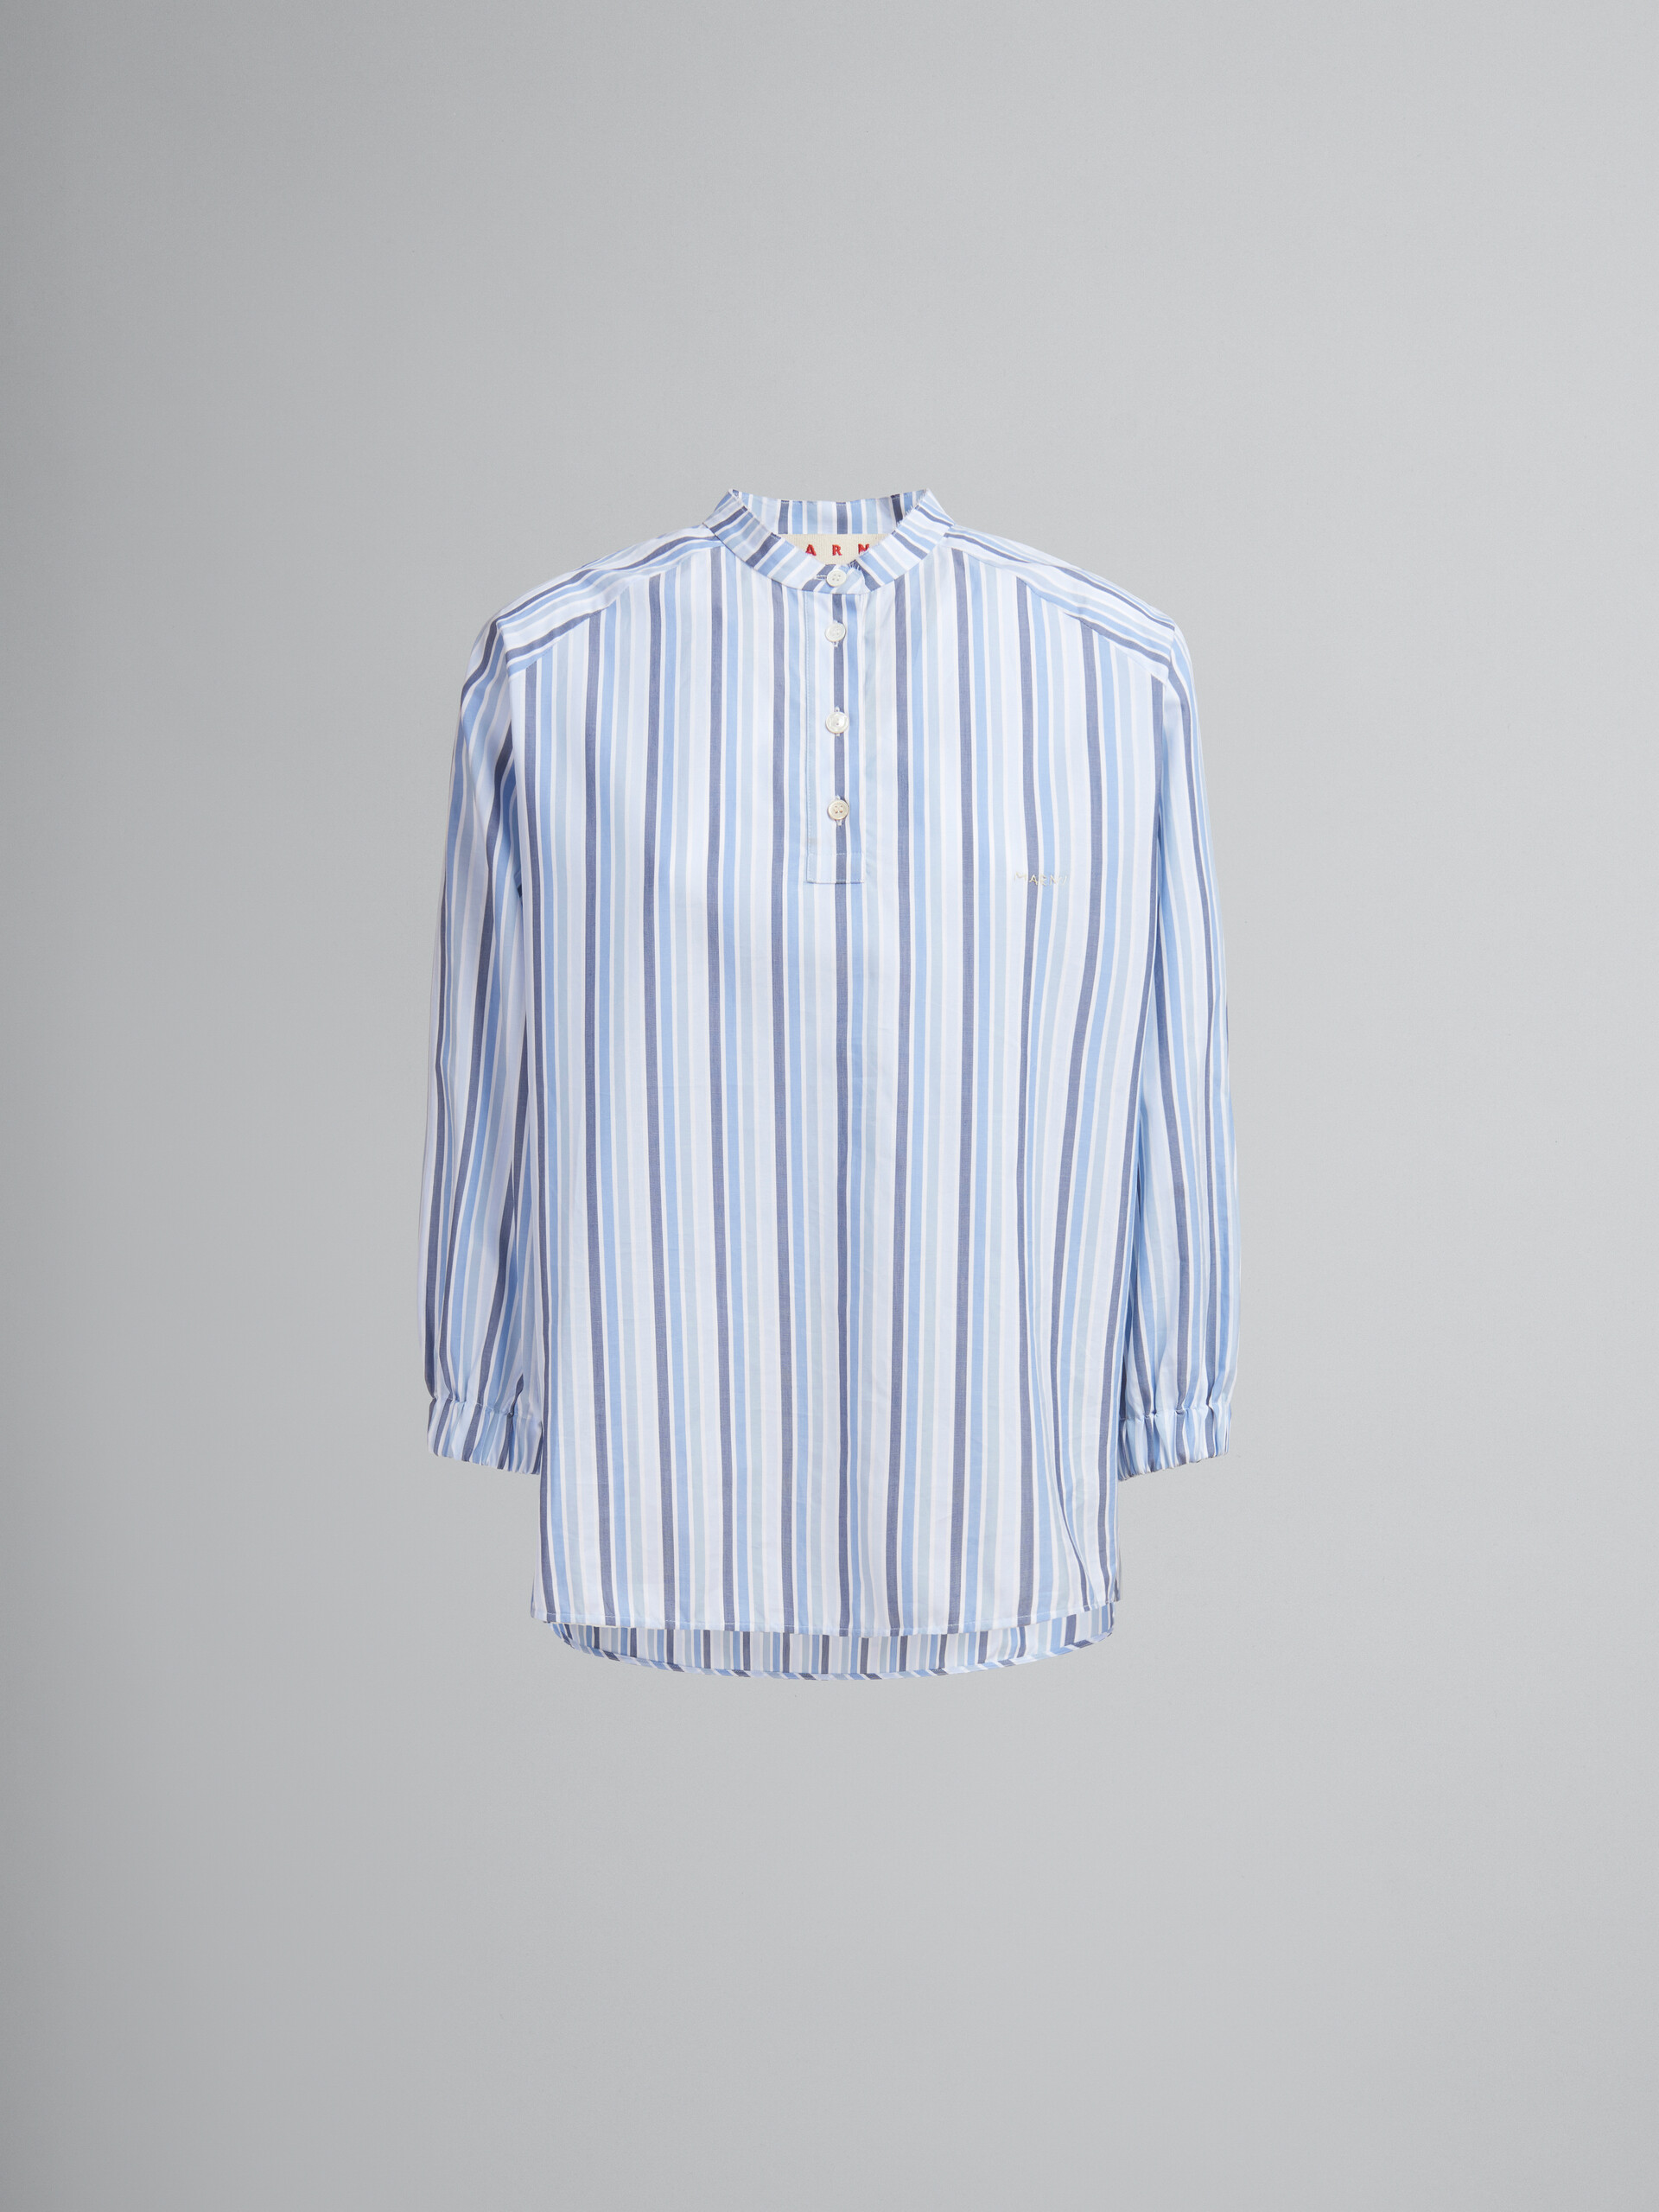 Blau gestreiftes Top aus Popeline mit Mandarin-Kragen - Hemden - Image 1